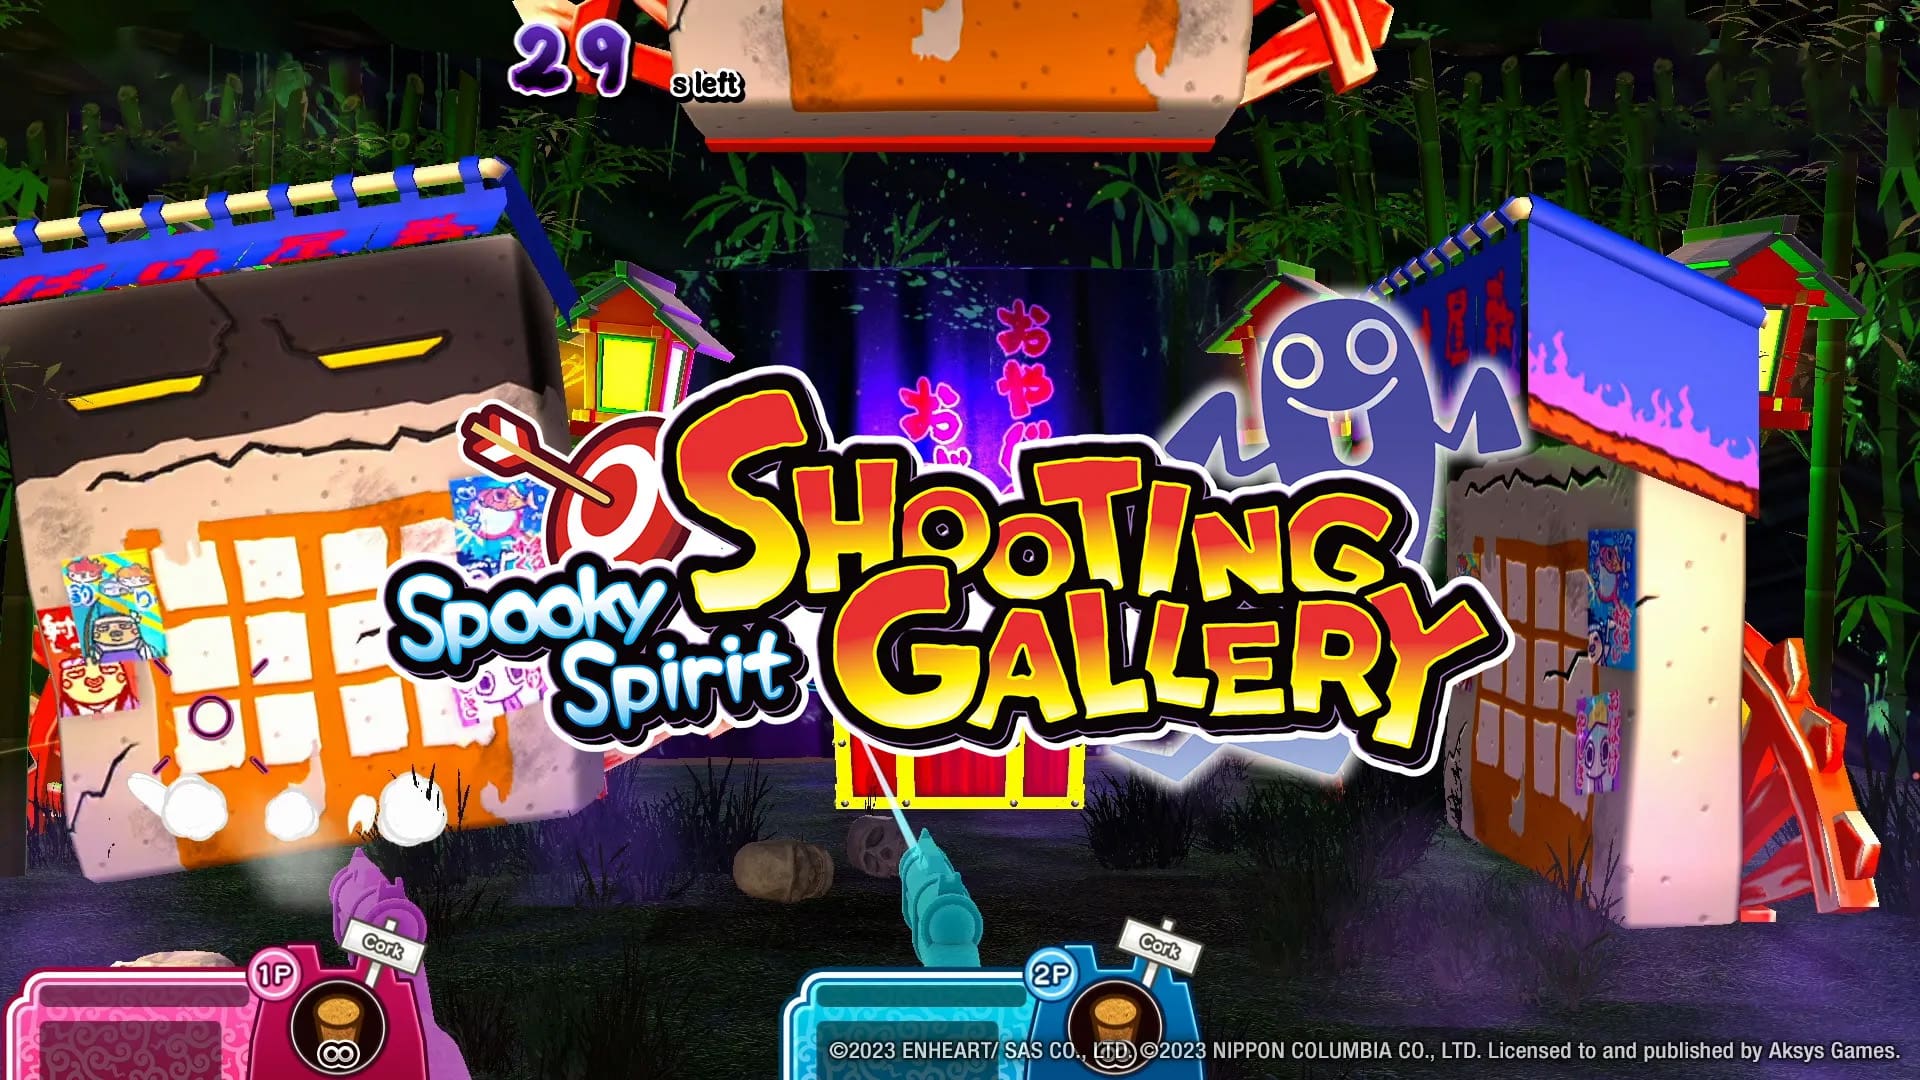 Spooky Spirit Shooting Gallery